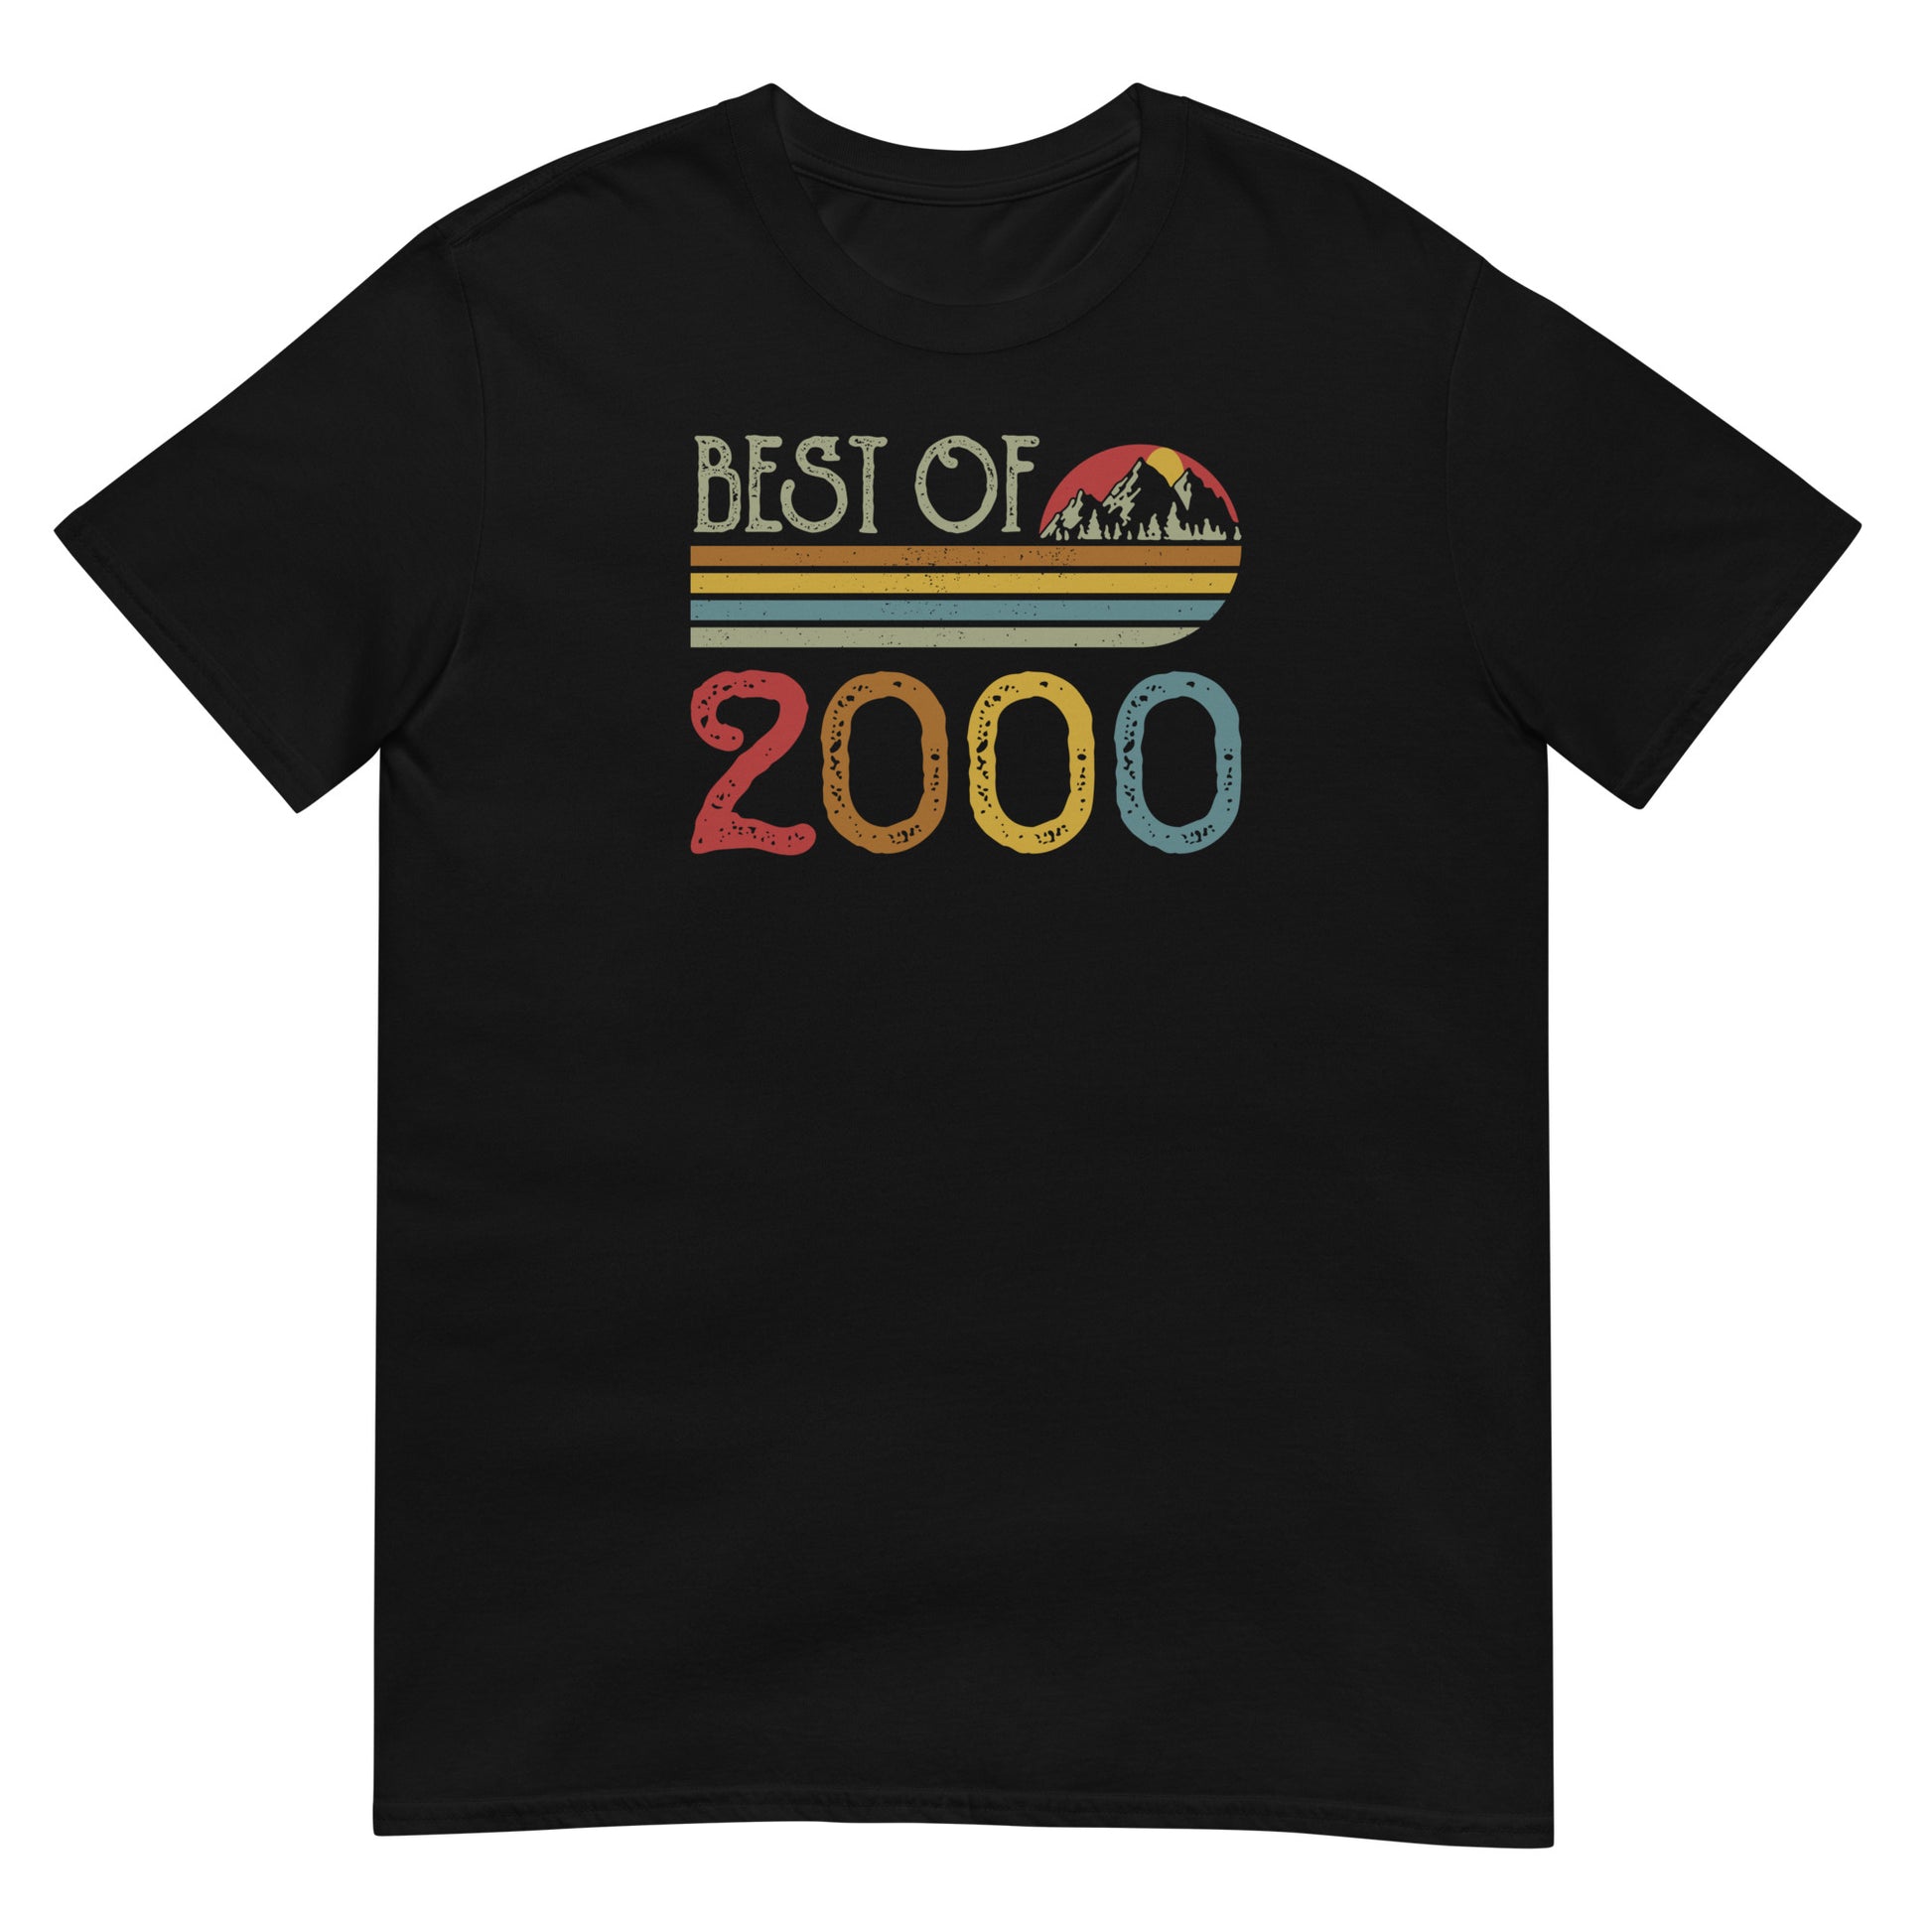 Camiseta Best Of 2000 - Cumpleaños